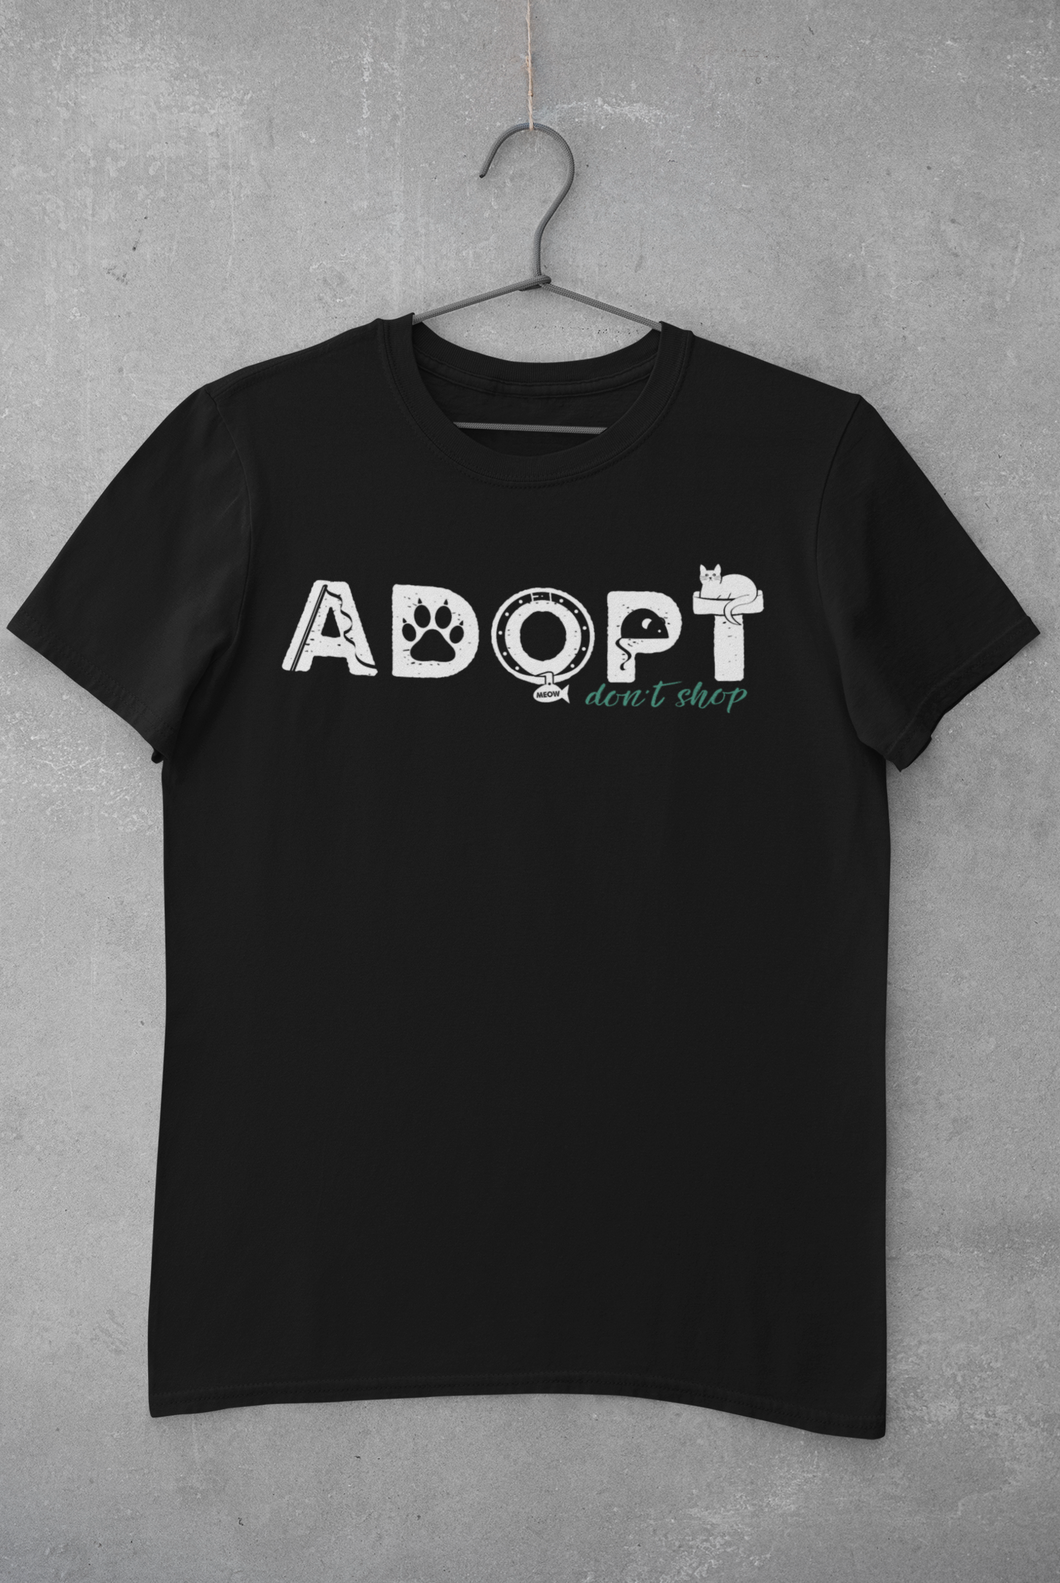 ADOPT (Feline style) Men's/Unisex or Women's T-shirt